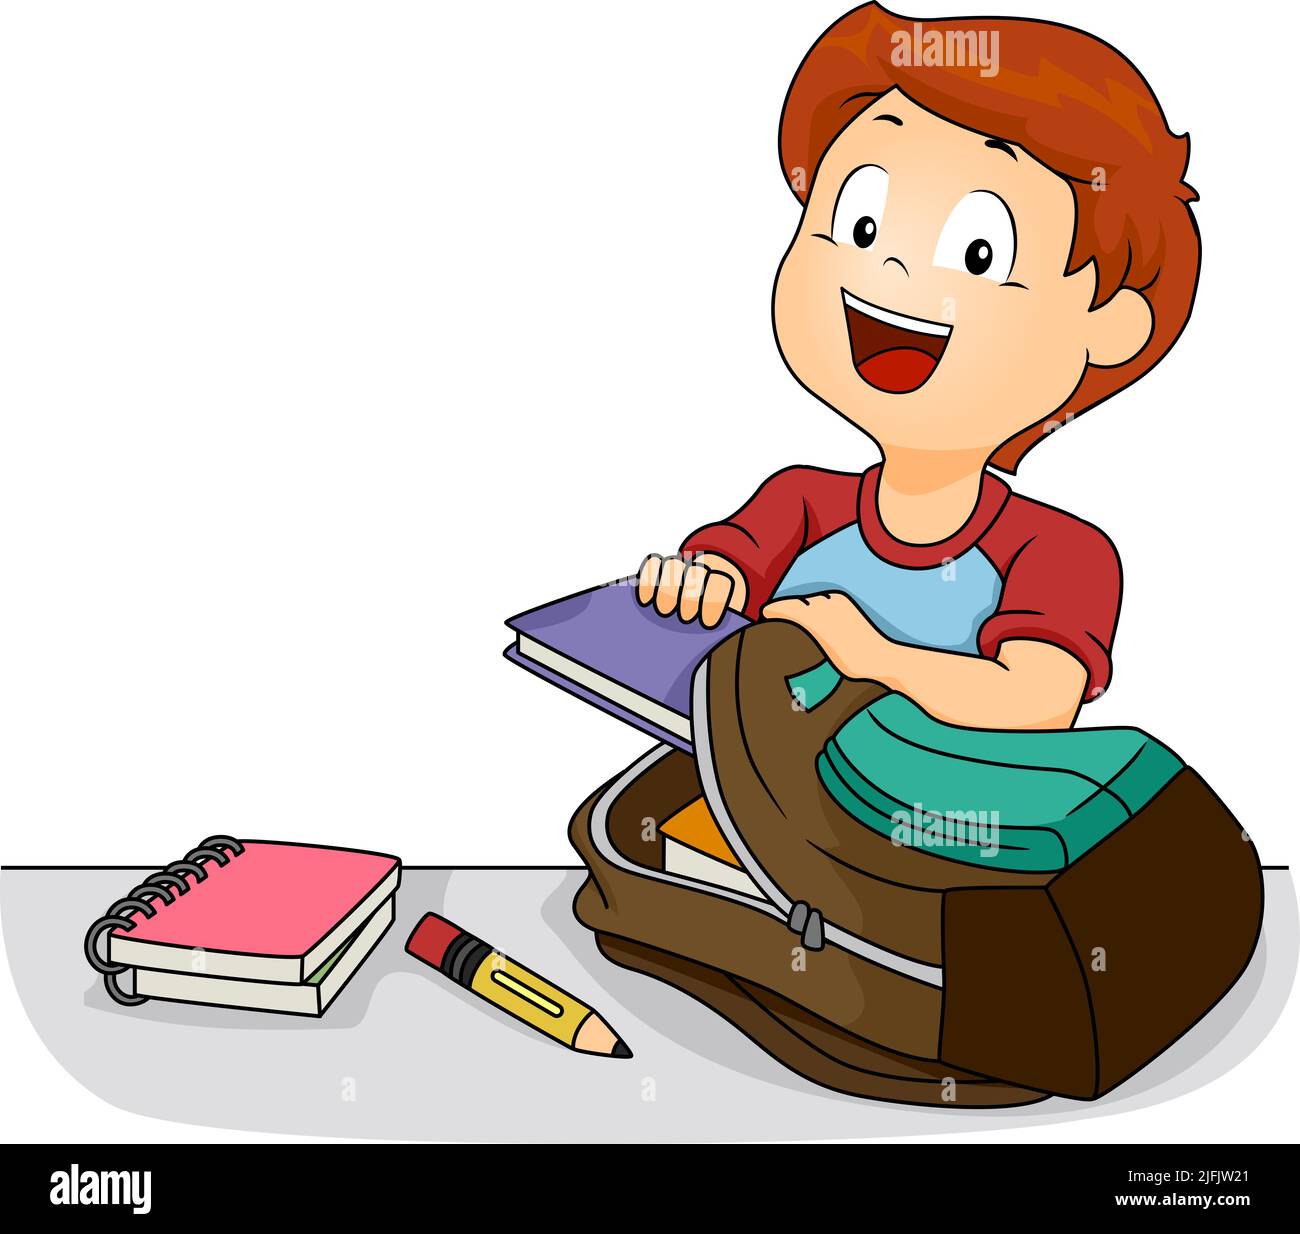 Ilustración de Kid Boy sosteniendo un libro y vaciando su mochila con un cuaderno en espiral y un lápiz sobre la mesa. Rutina después de clases Foto de stock